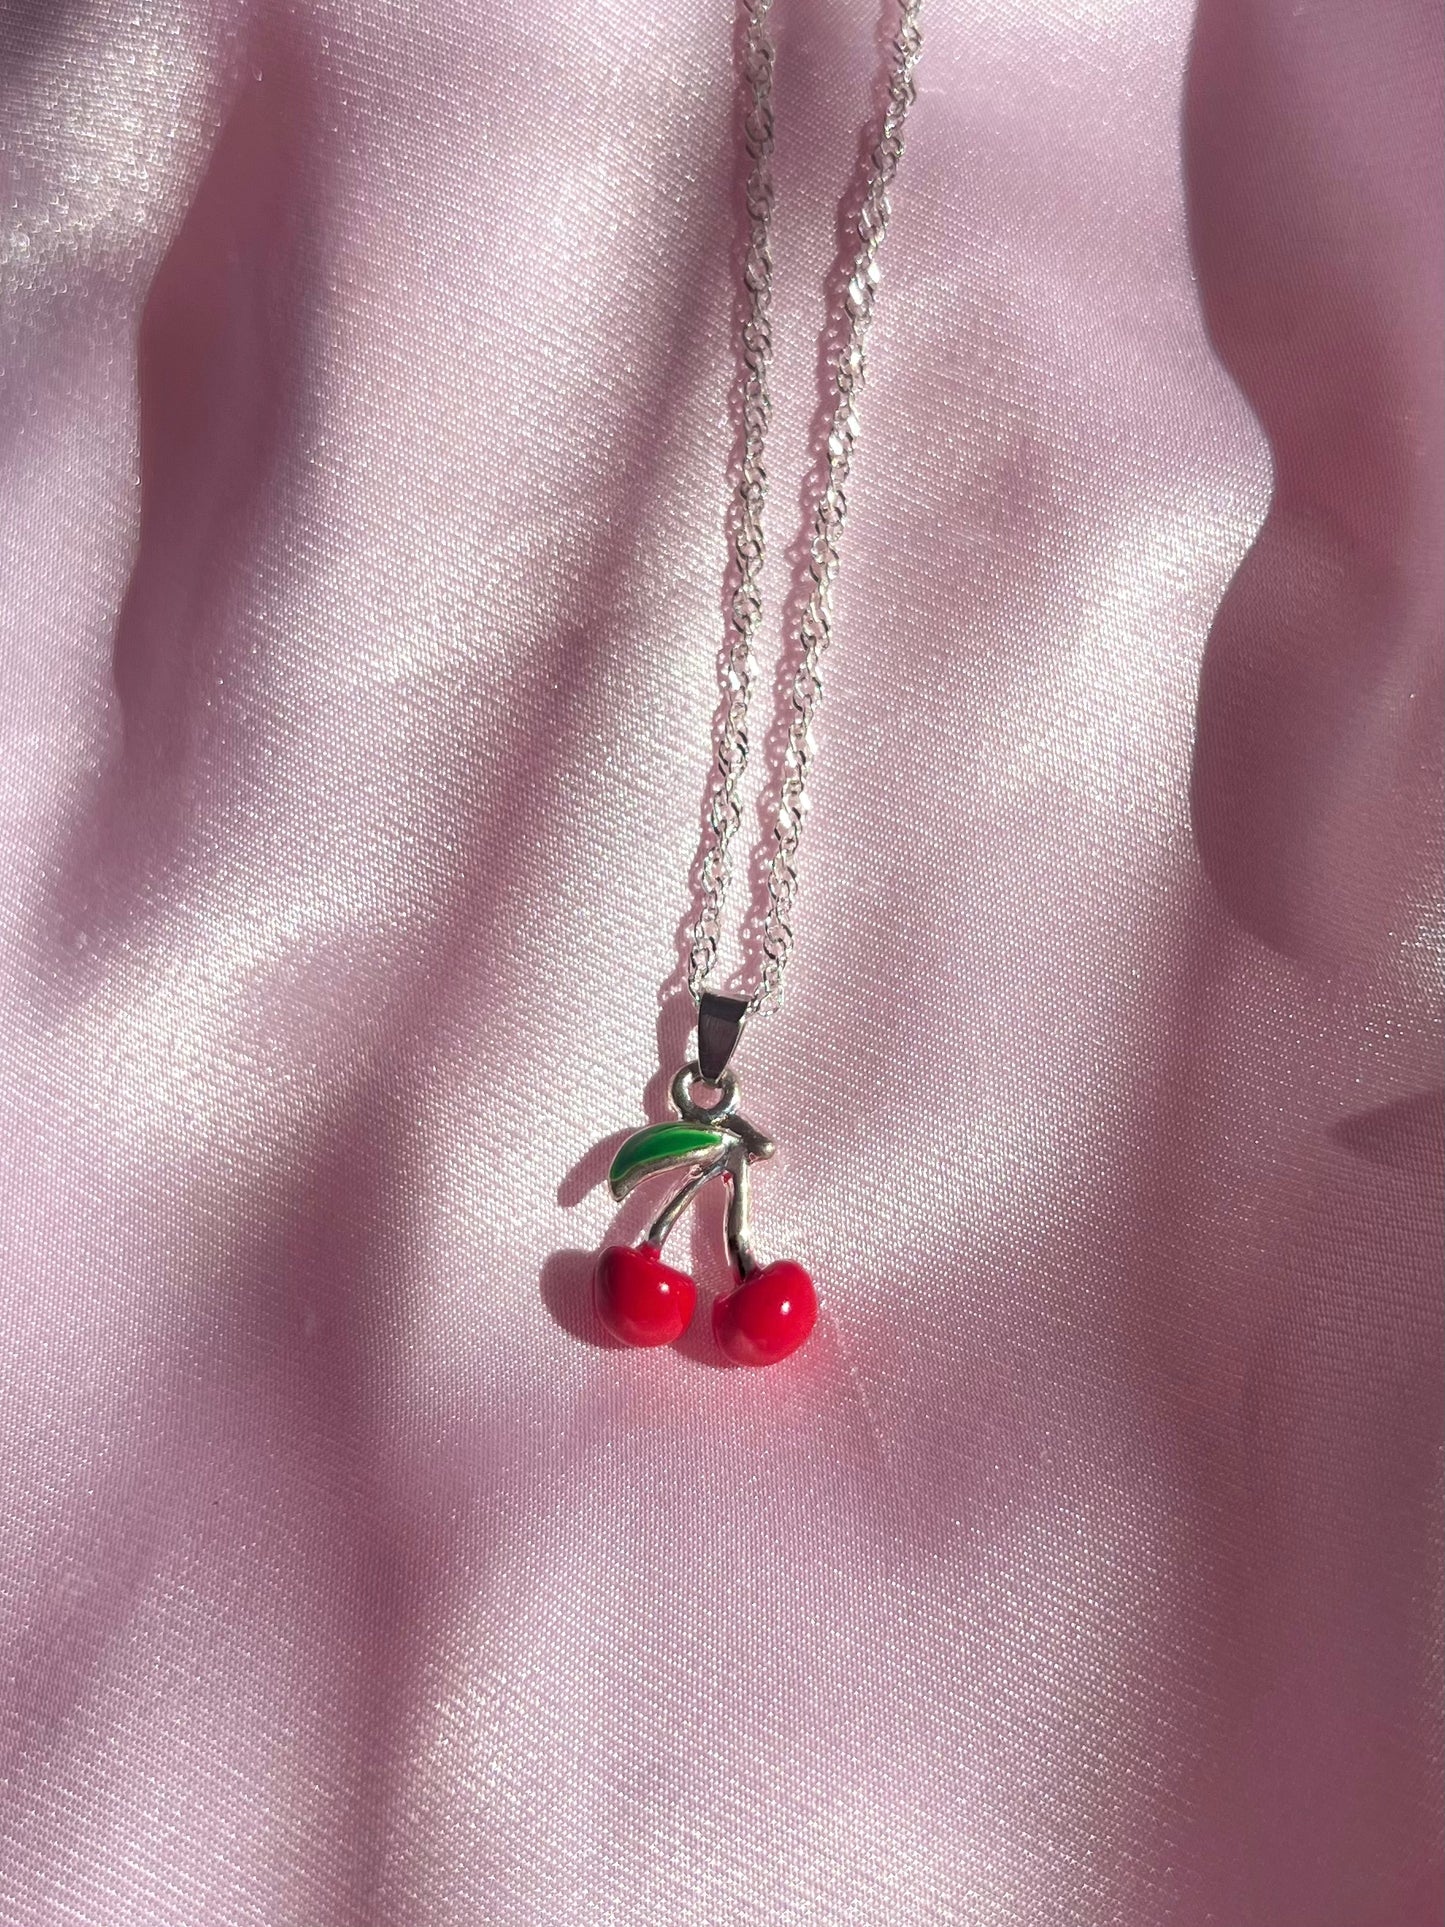 Cherry Bomb, Necklaces